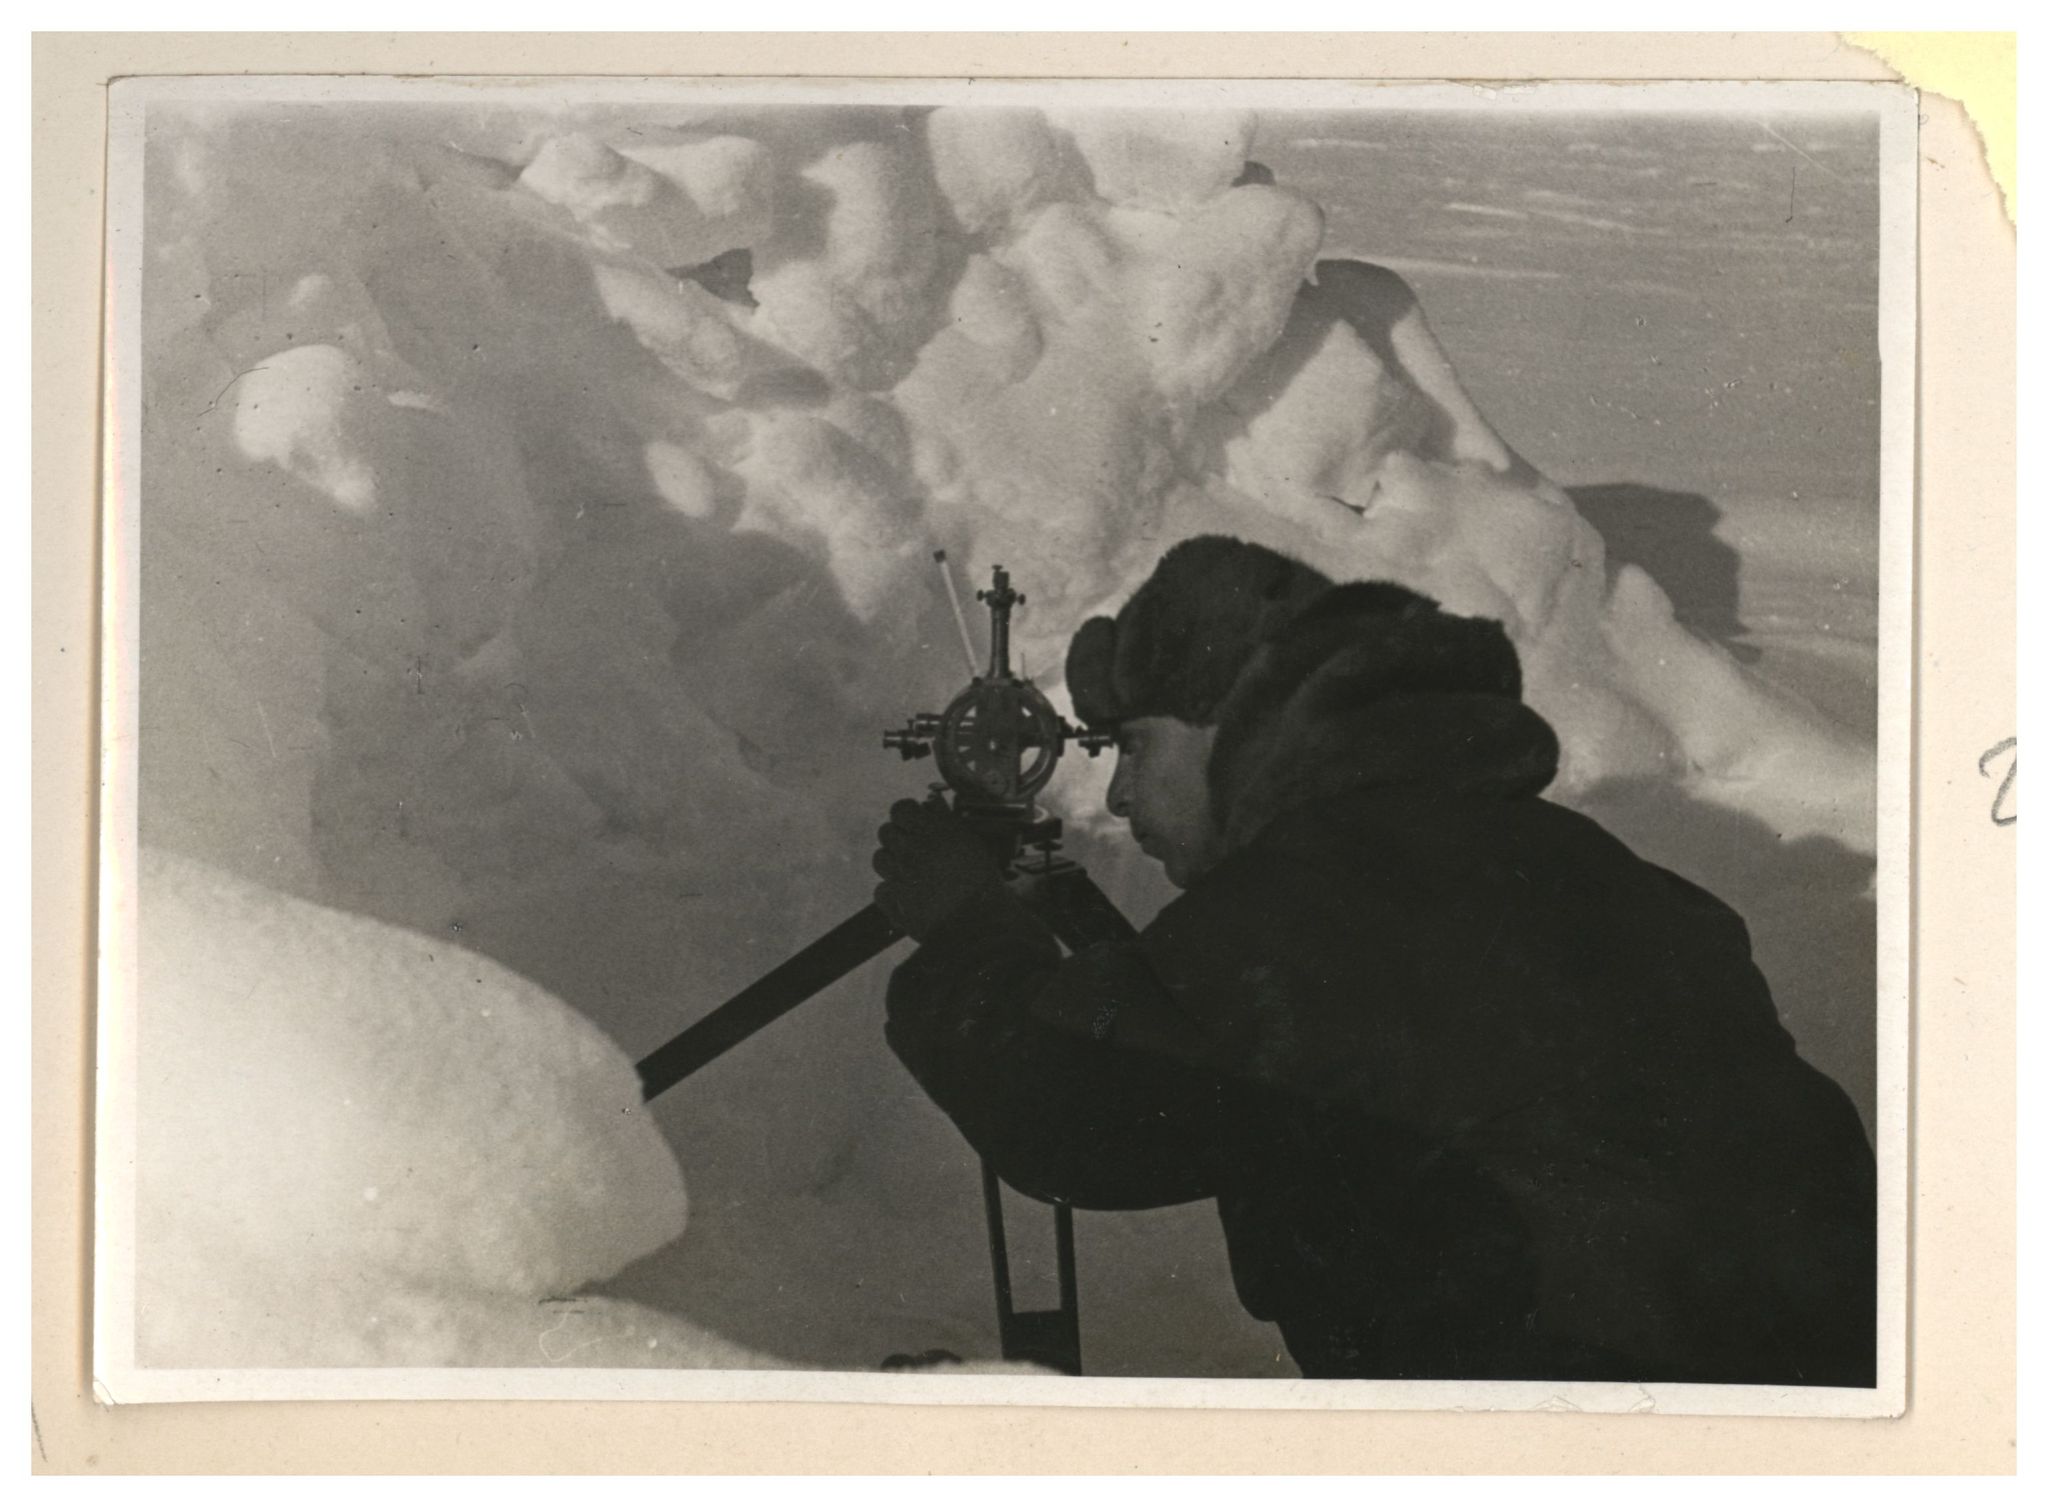 North pole 1. Северный полюс 1 Папанин. Экспедиция Папанина на Северный полюс 1937. Папанин Экспедиция на Северный полюс.